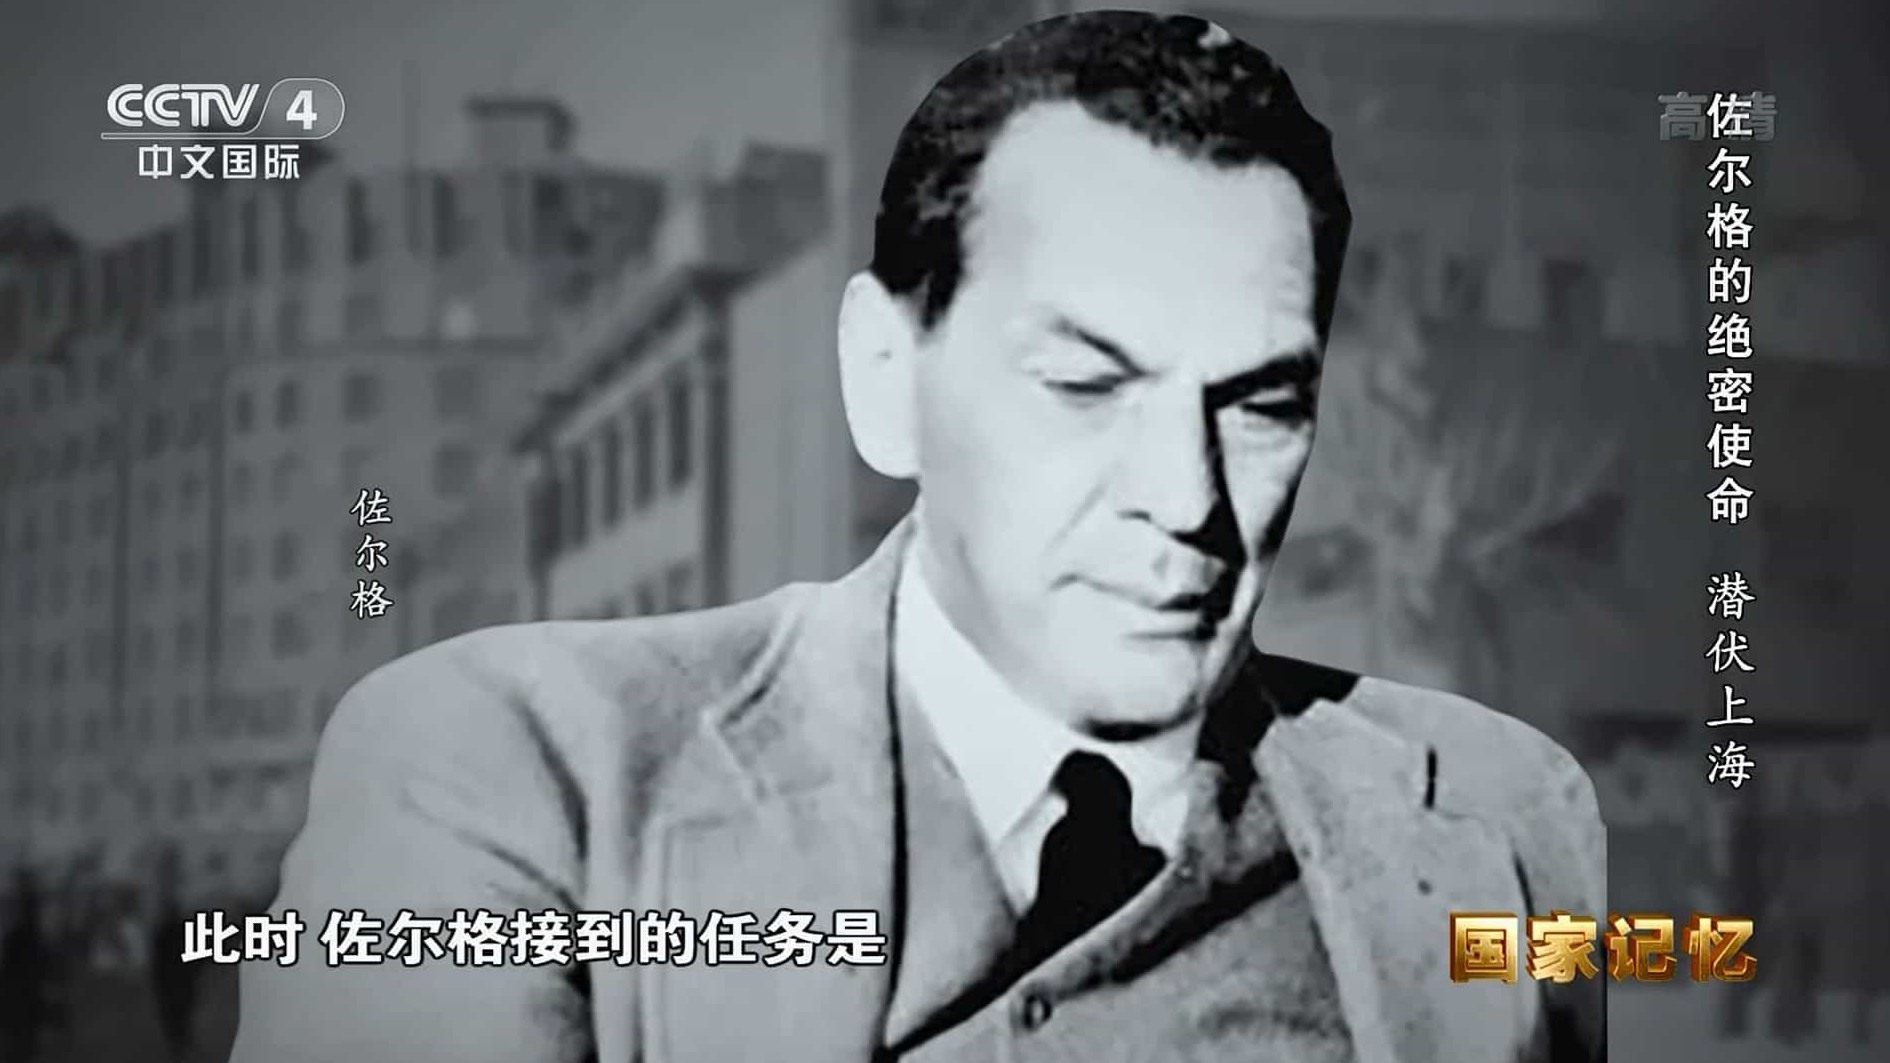 央视国家记忆系列《佐尔格的绝密使命 2021》汉语中字 1080i